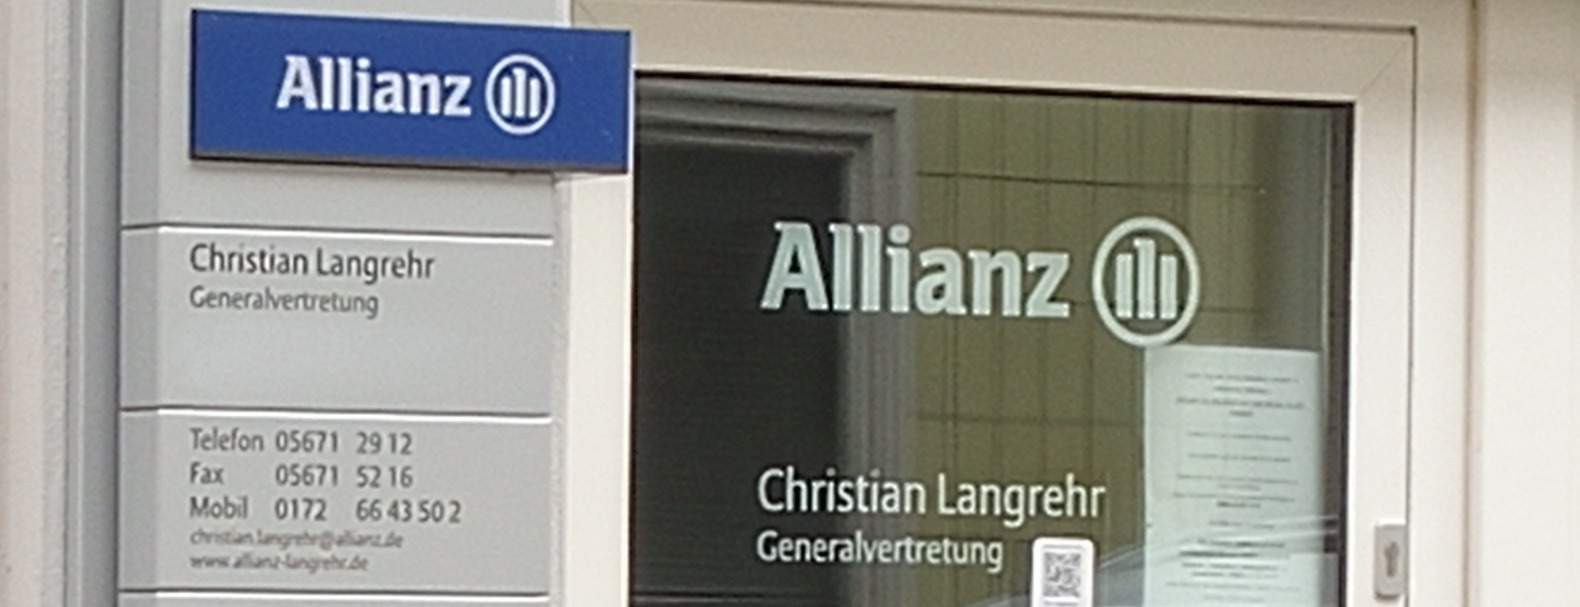 Allianz Versicherung Christian Langrehr Hofgeismar - Krankheitsbedingt heute kurzfristig geschlossen